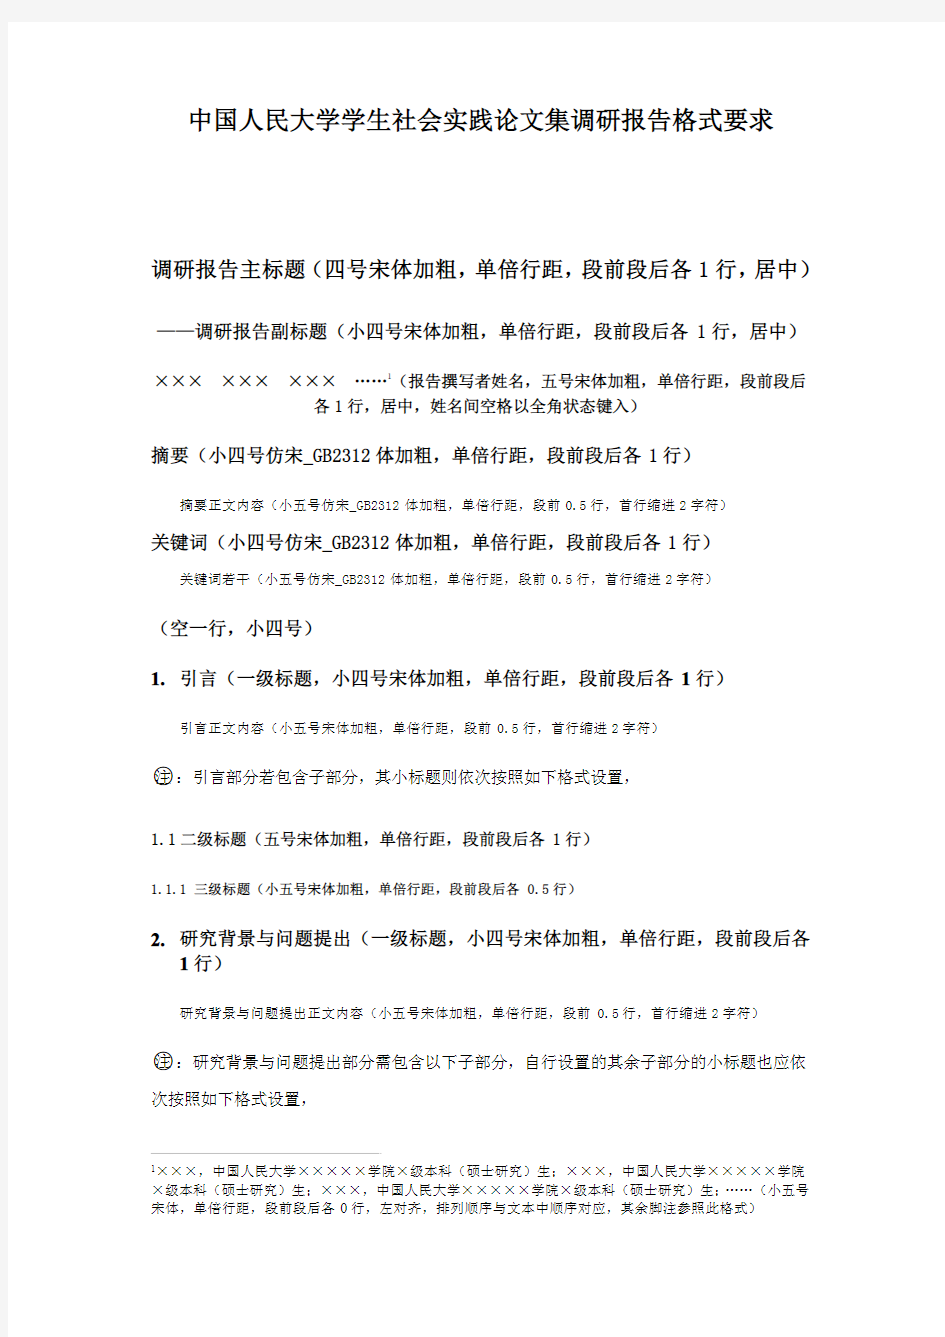 中国人民大学学生社会实践论文集调研报告格式范本